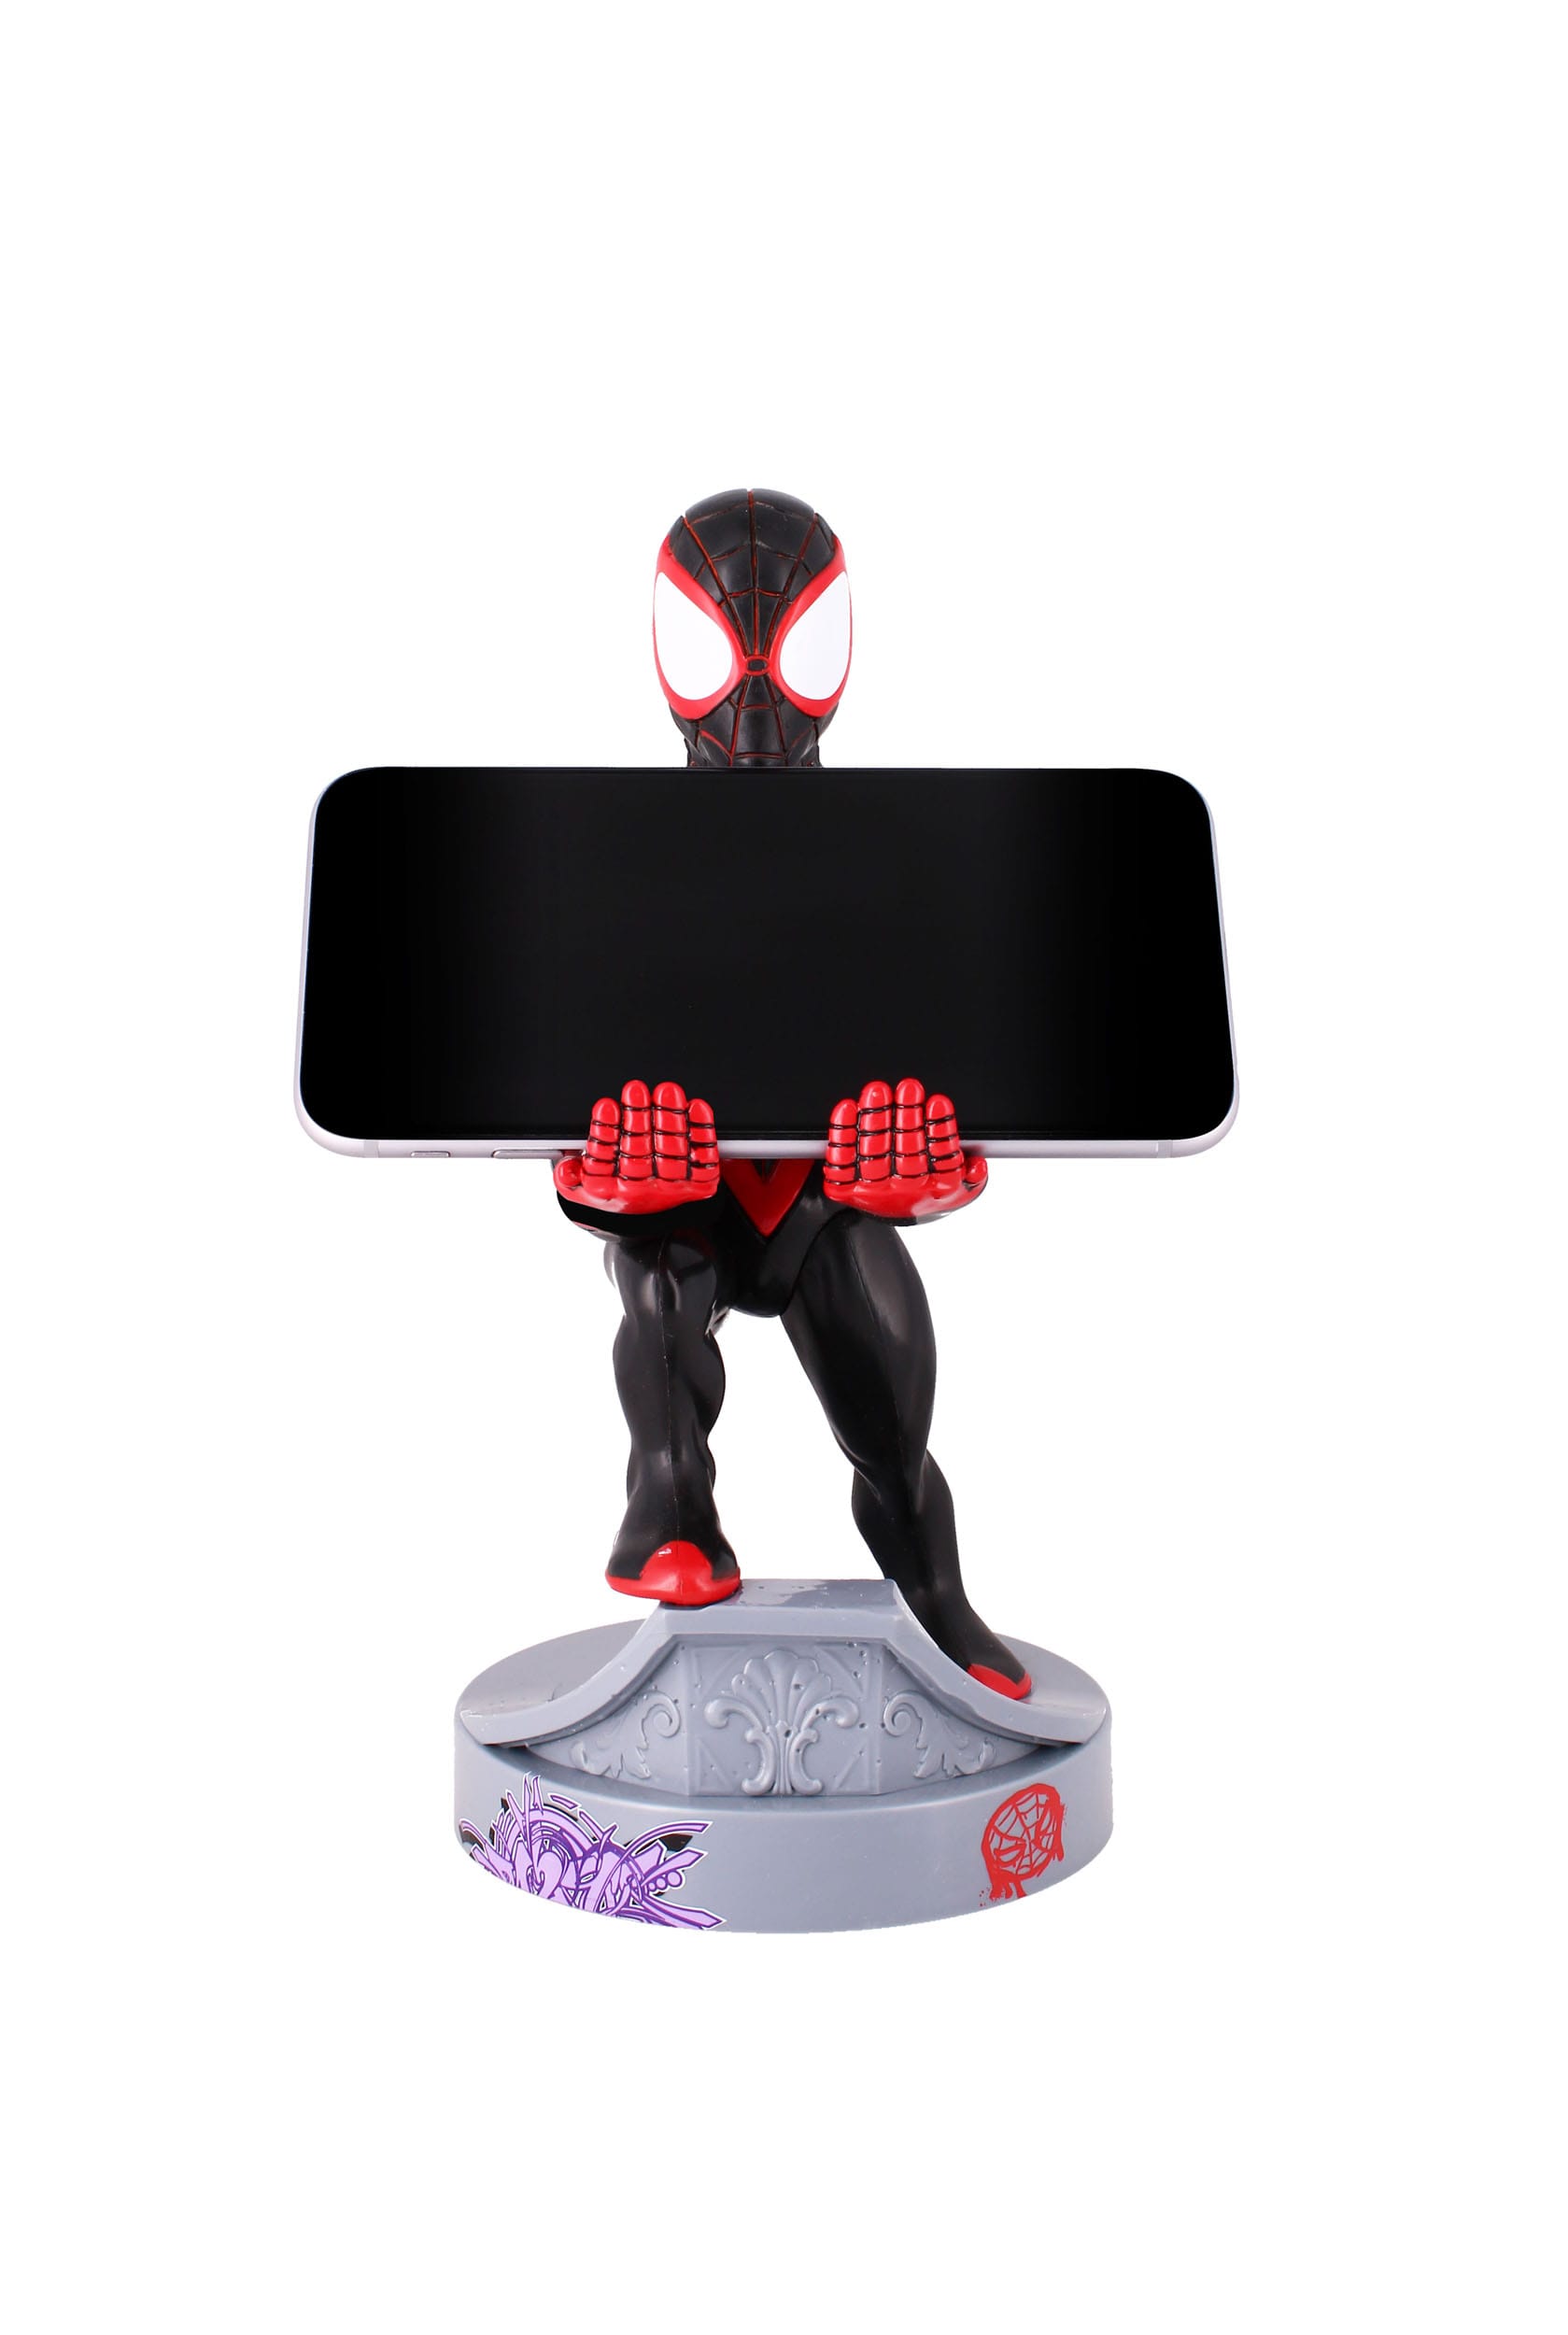 SPIDER-MAN MILES MORALES Figurine 20cm Support Manette & Portable  Spider-Man Cable Guy Miles Morales Exquisite Gaming